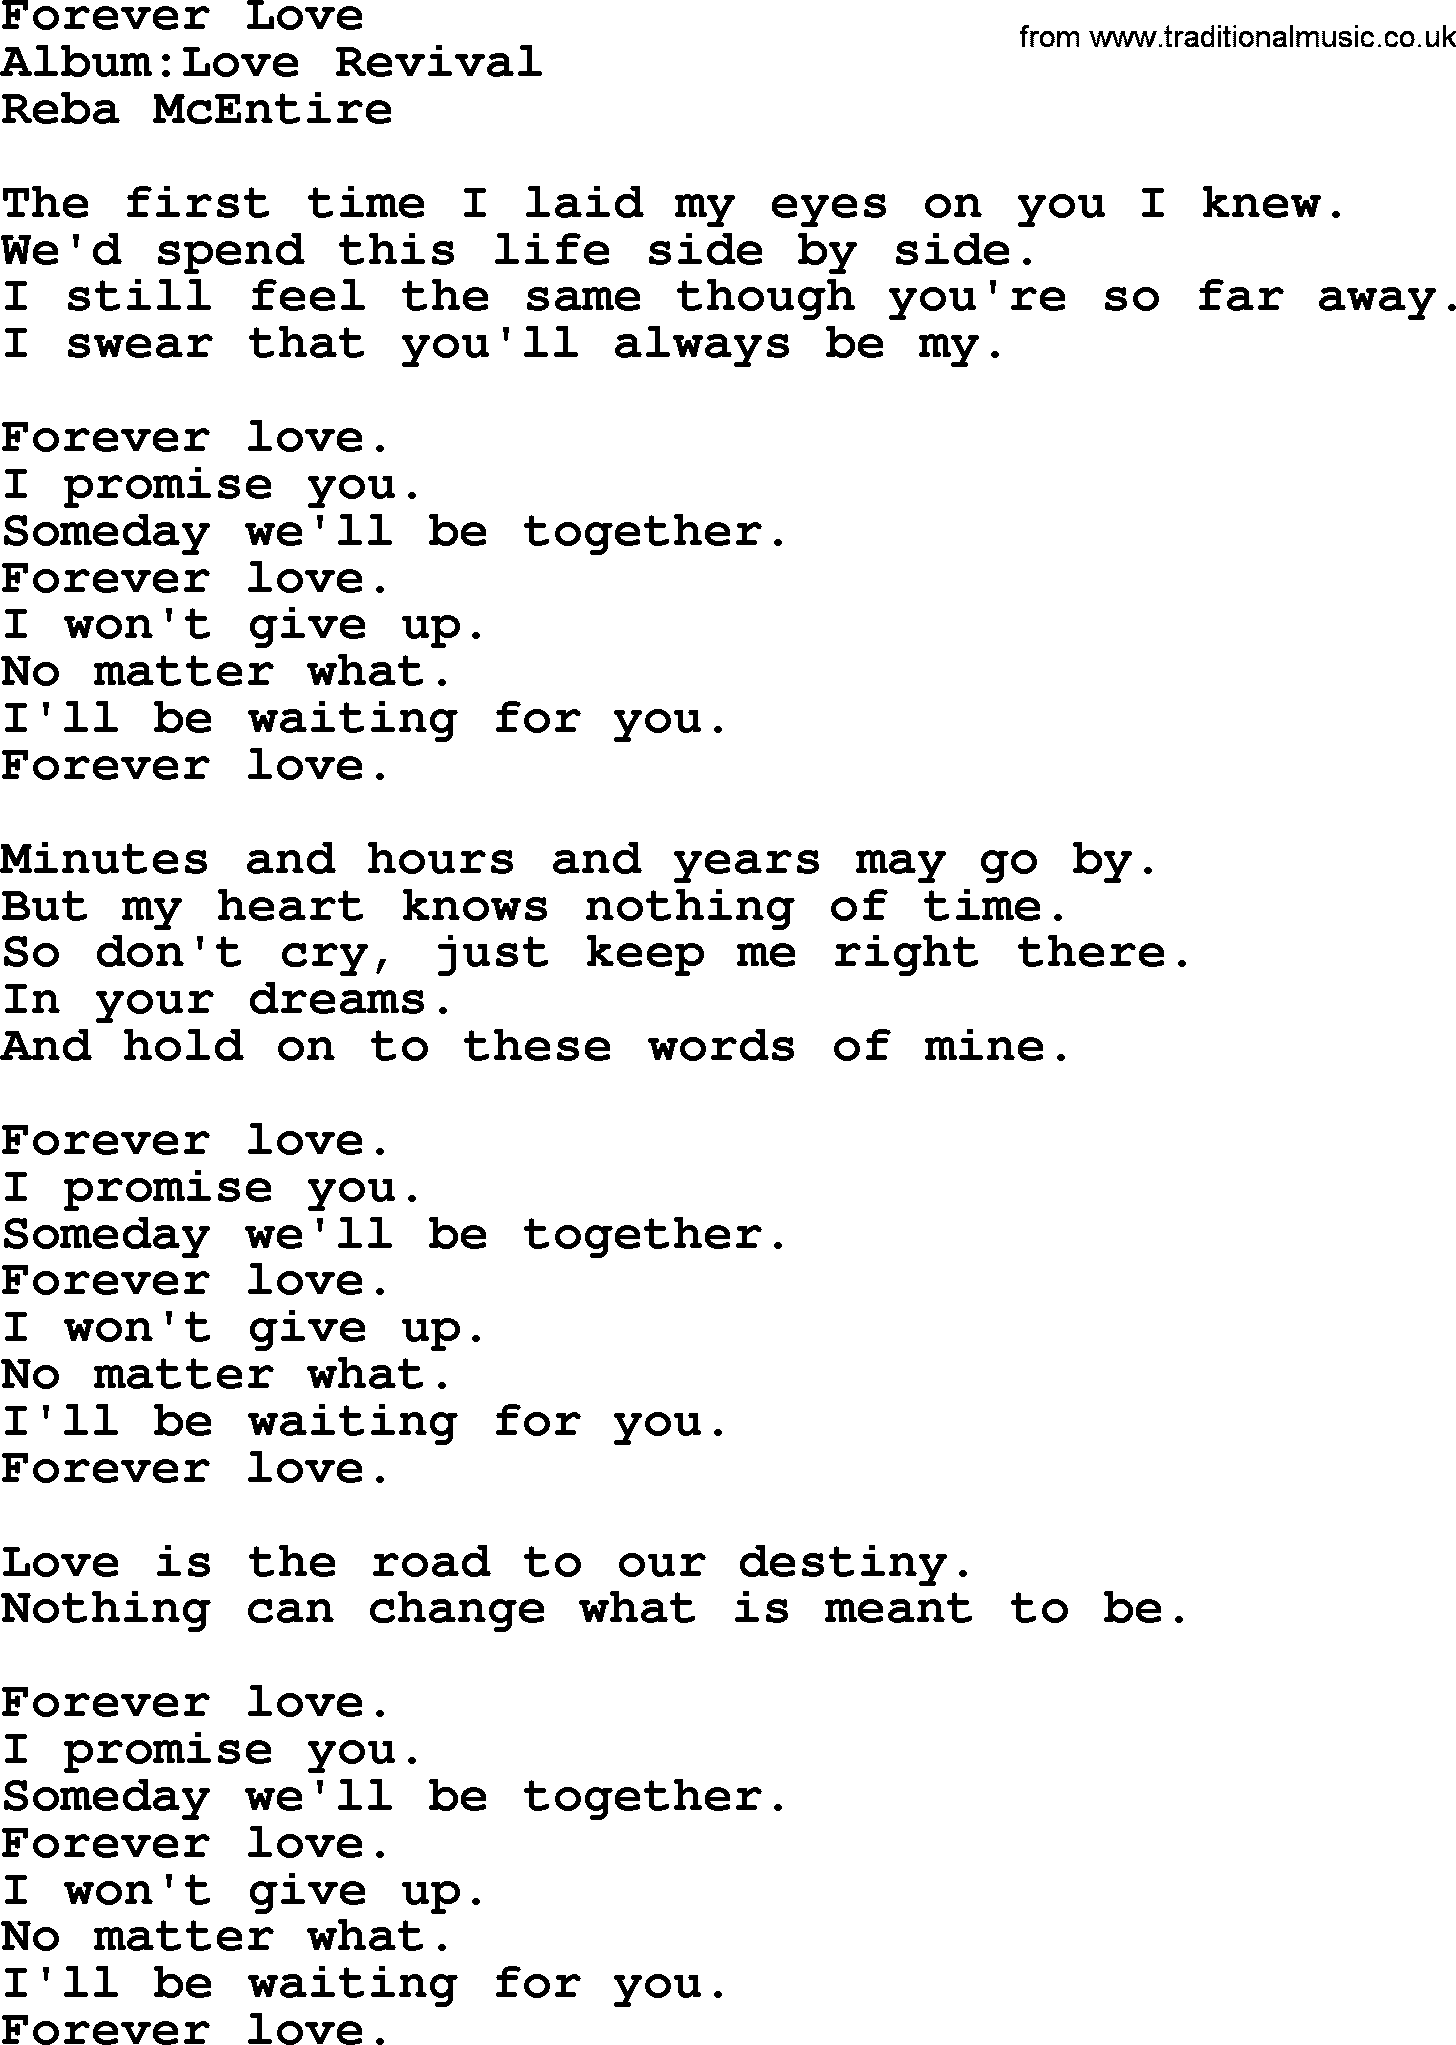 Reba McEntire song: Forever Love lyrics